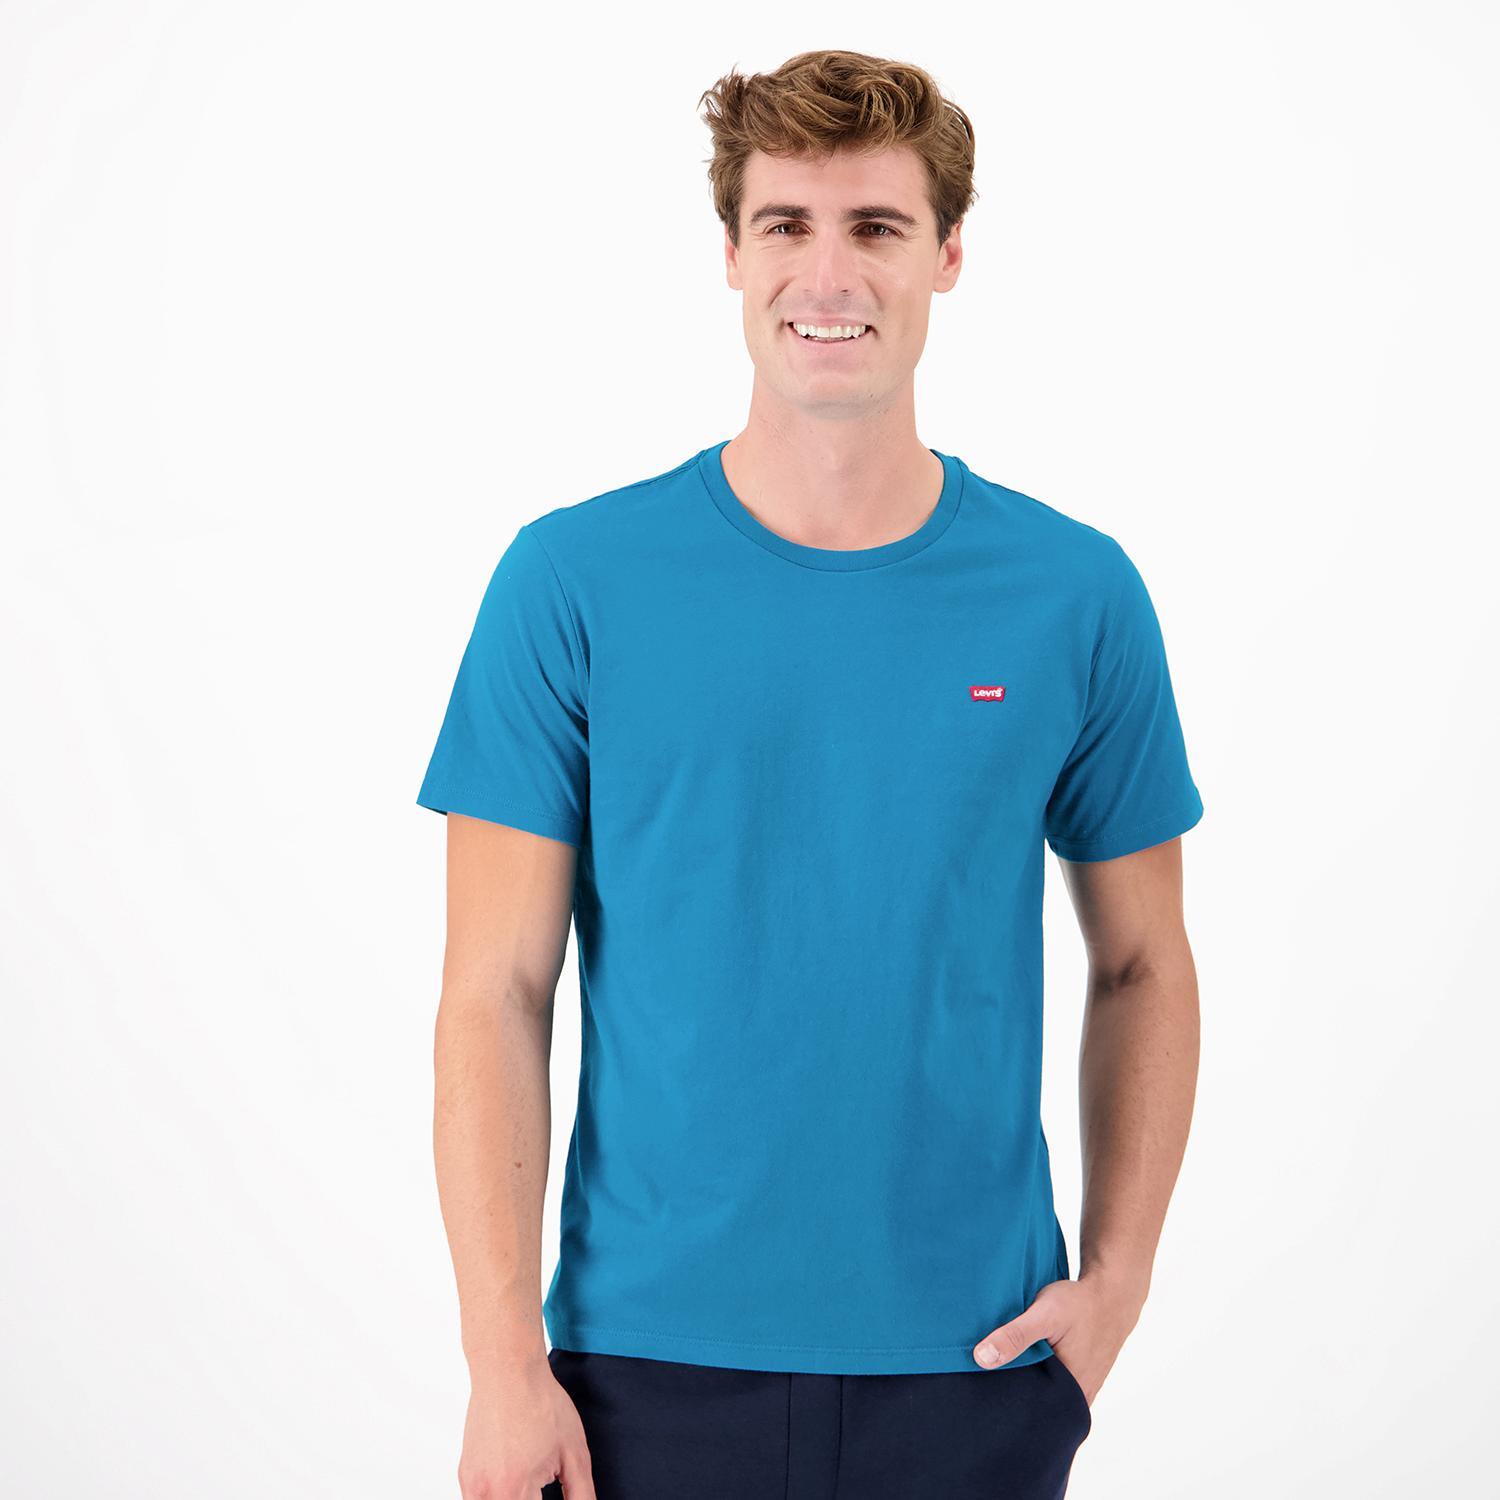 Levi's Original - Azul - T-shirt Homem tamanho M